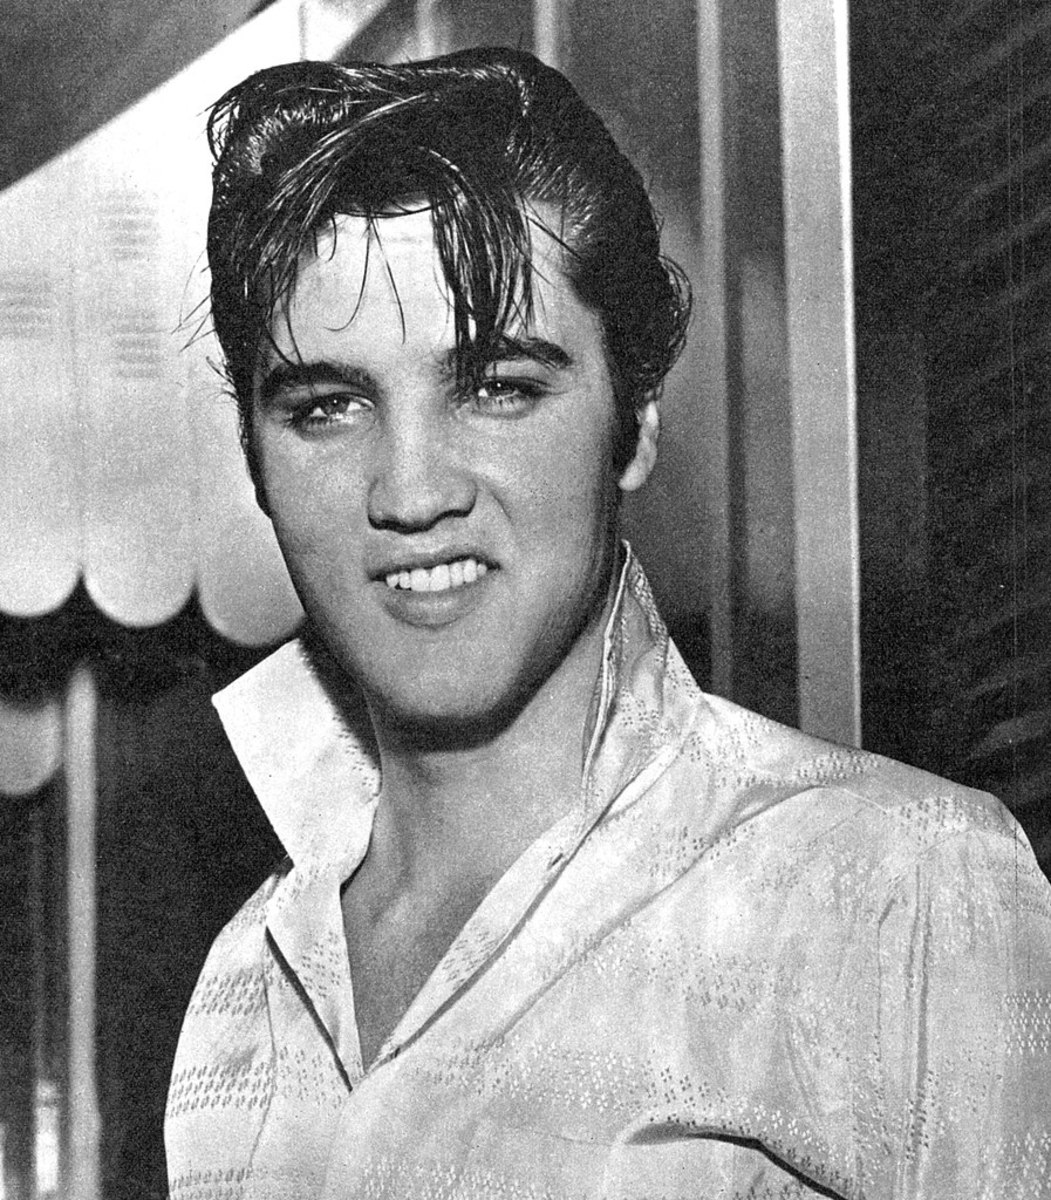 Elvis' 